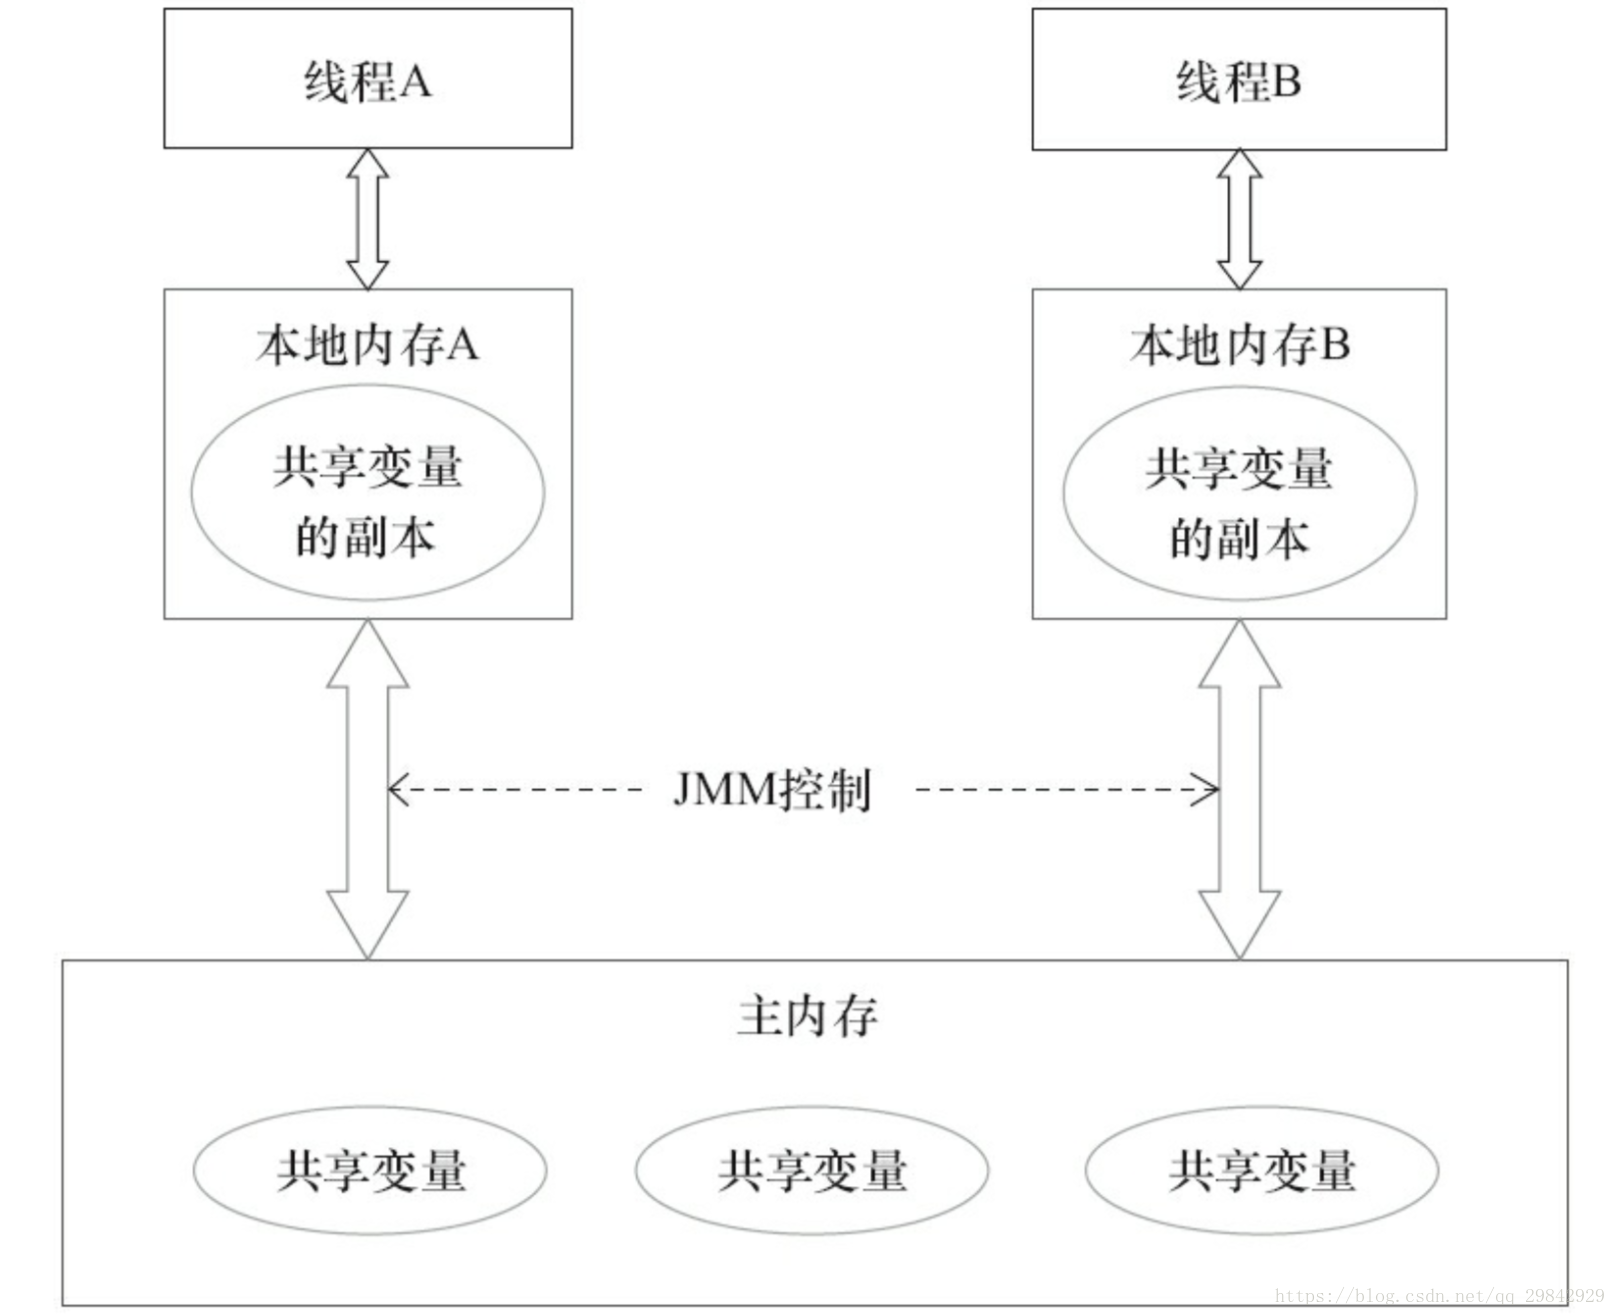 Java内存模型的抽象结构示意图